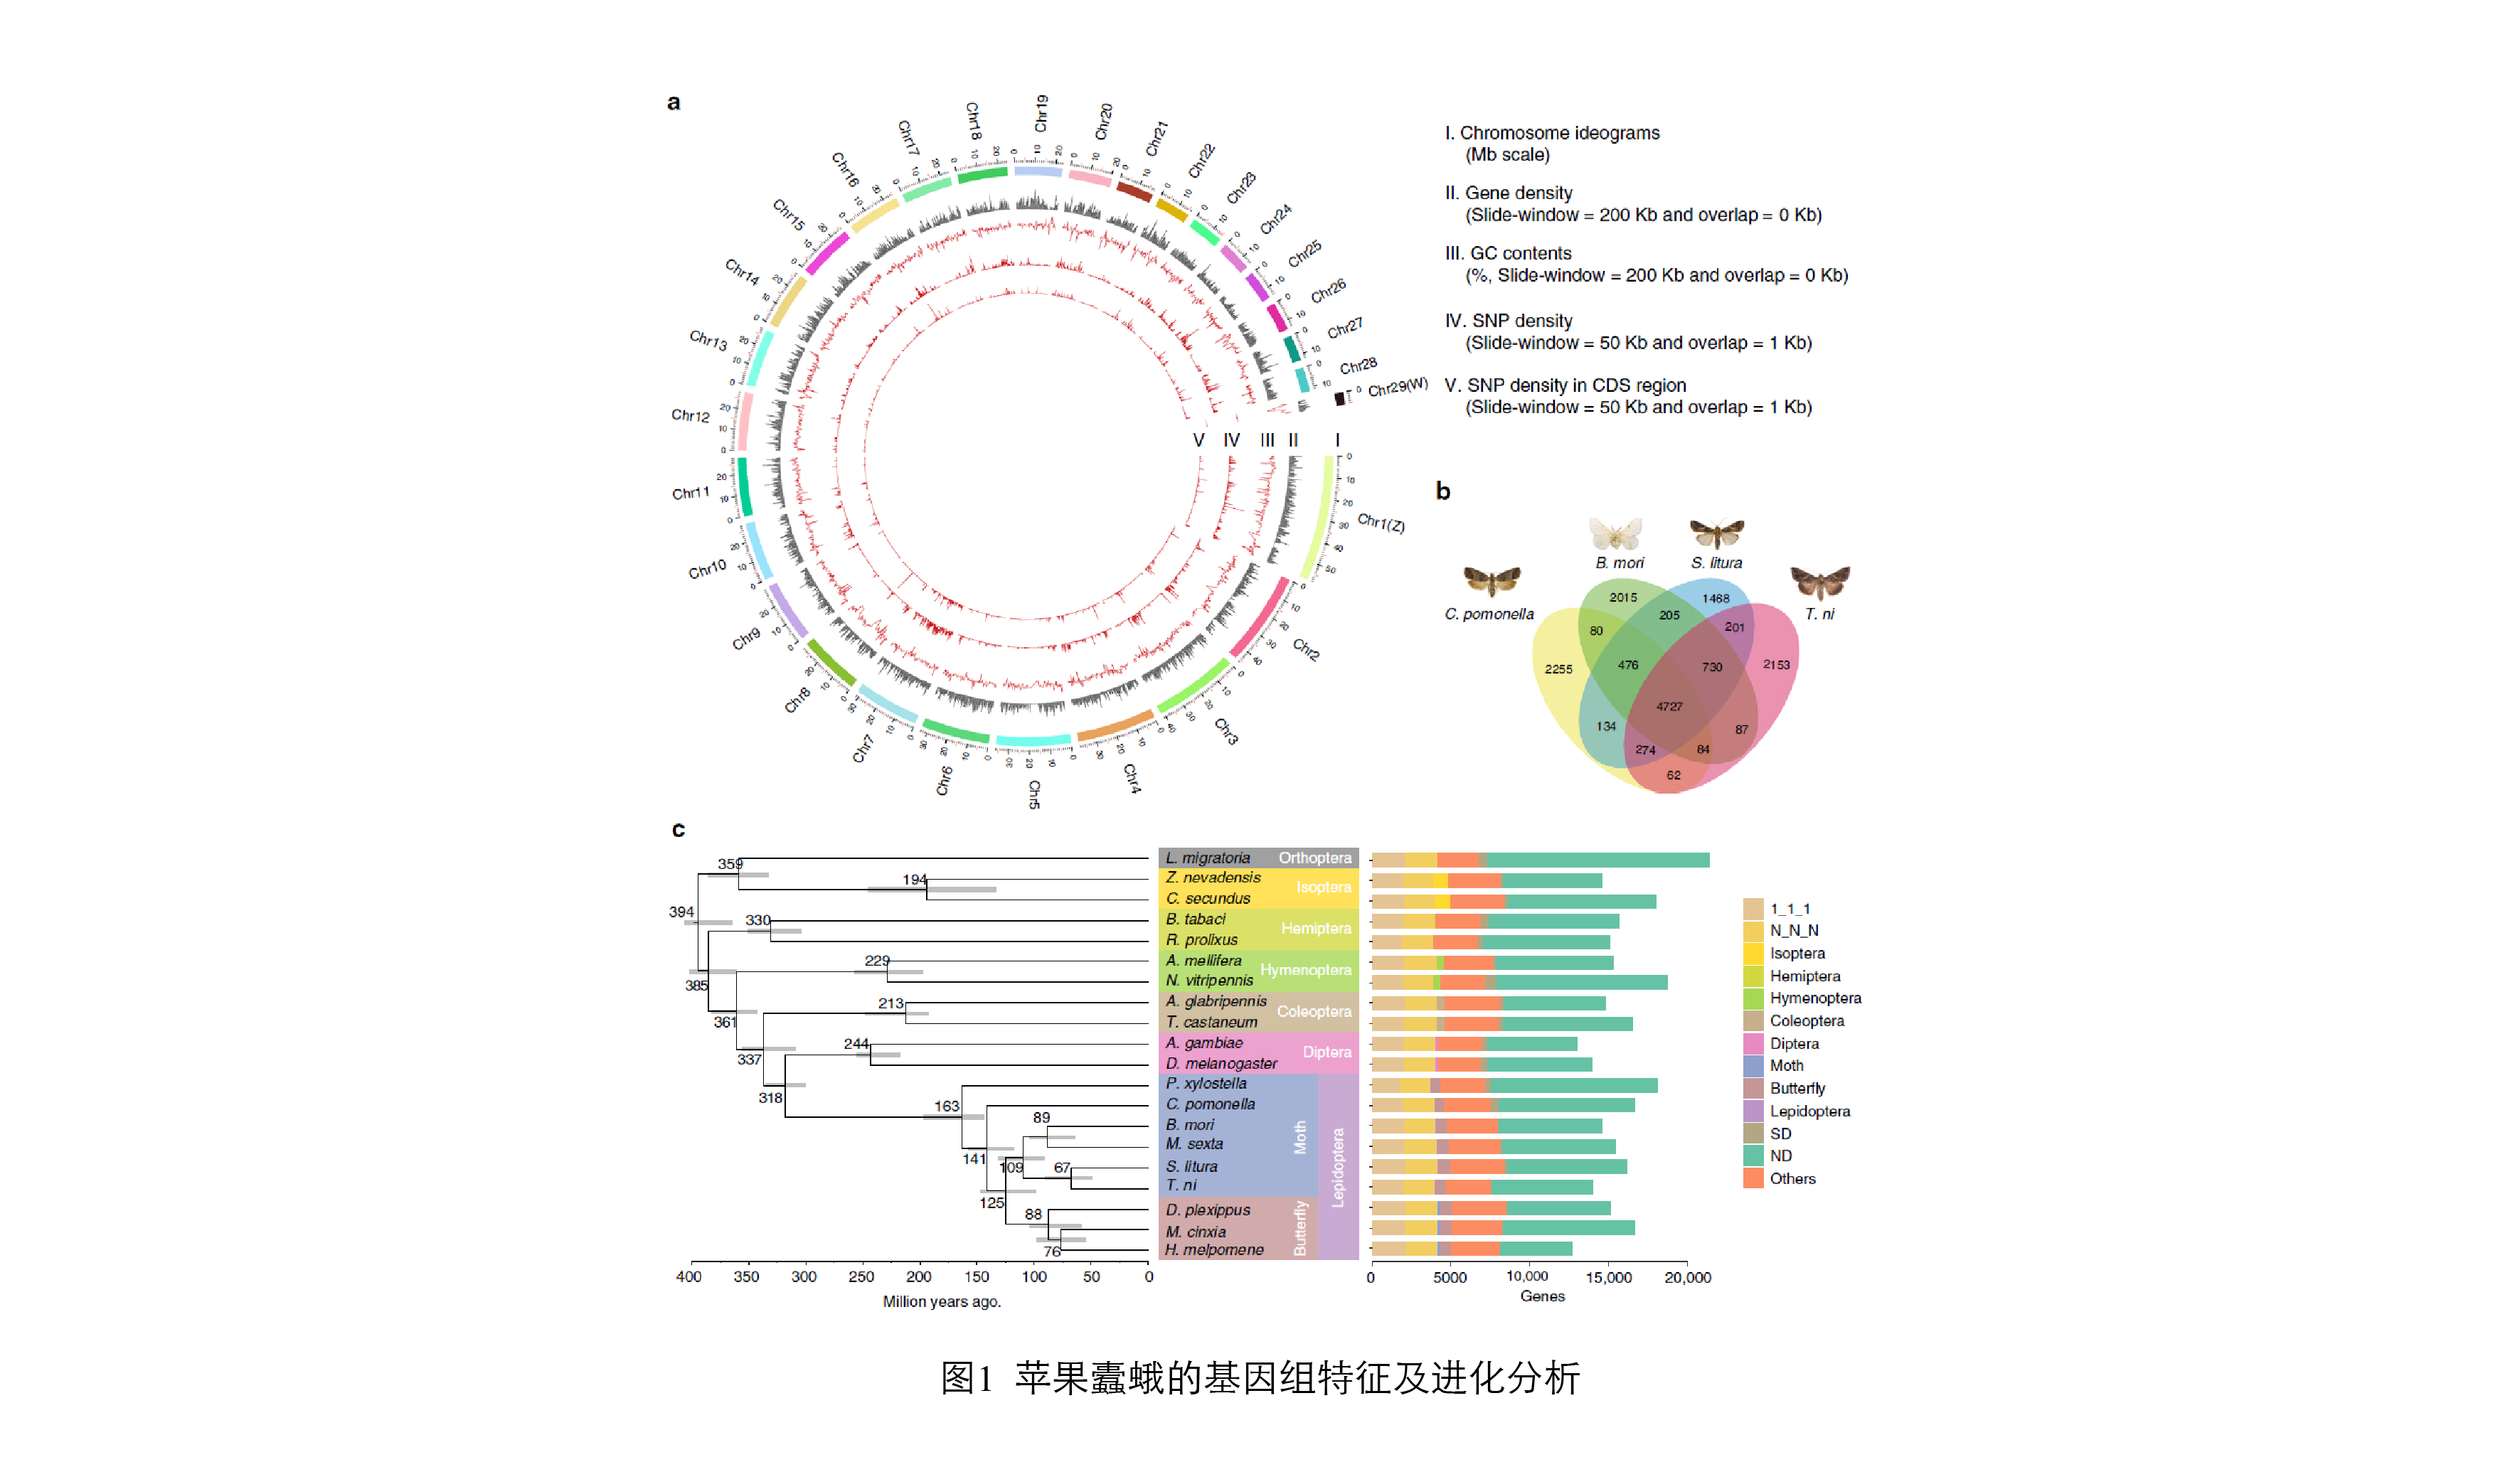 图1. 苹果蠹蛾的基因组特征及进化分析